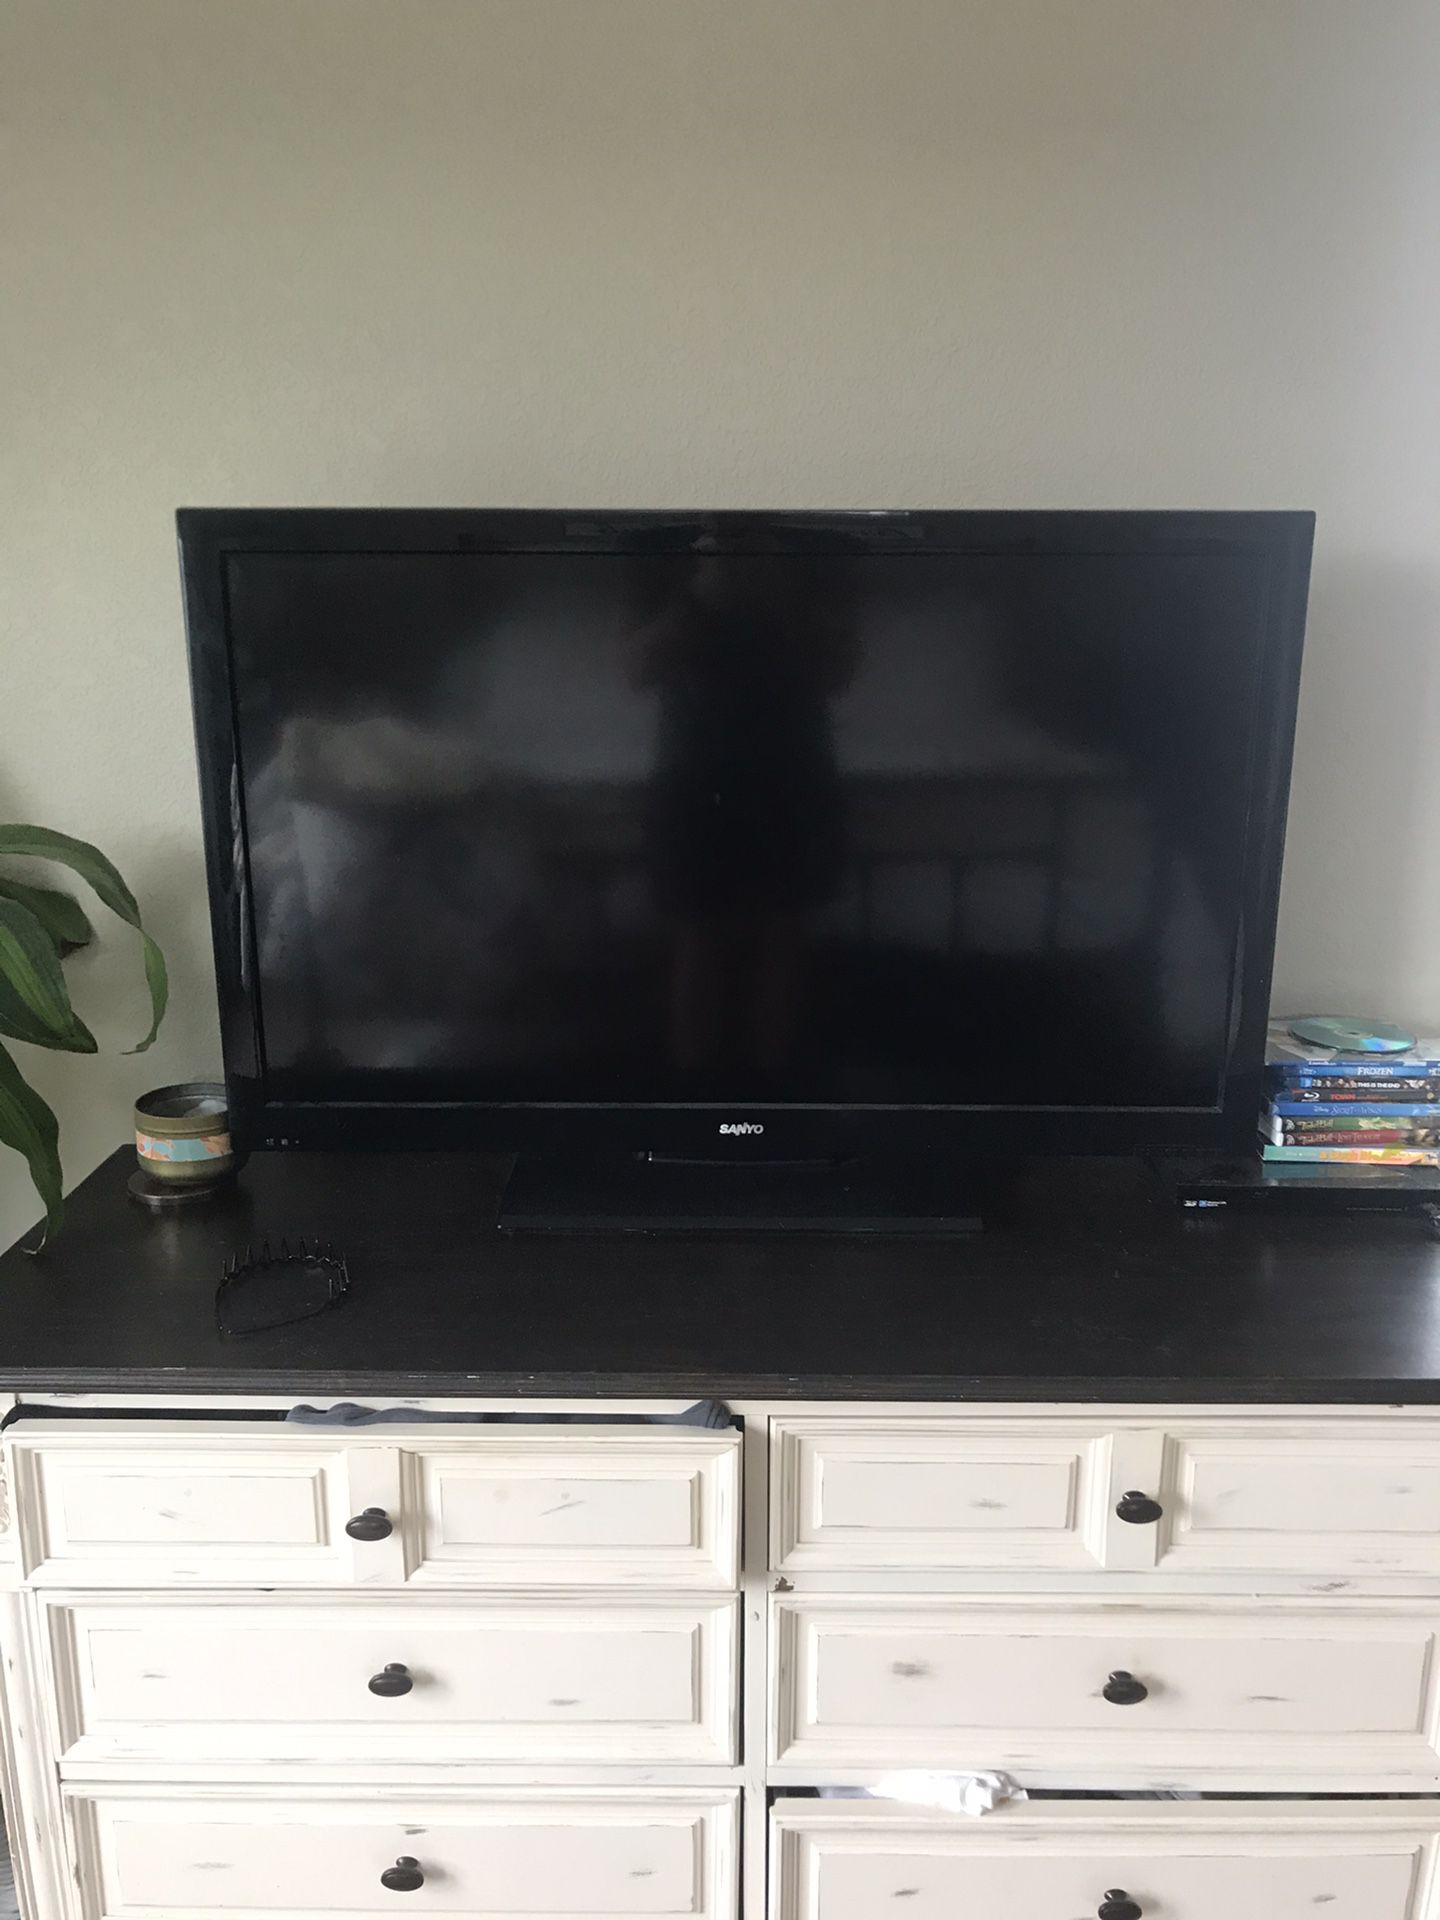 Sanyo 42 inch TV